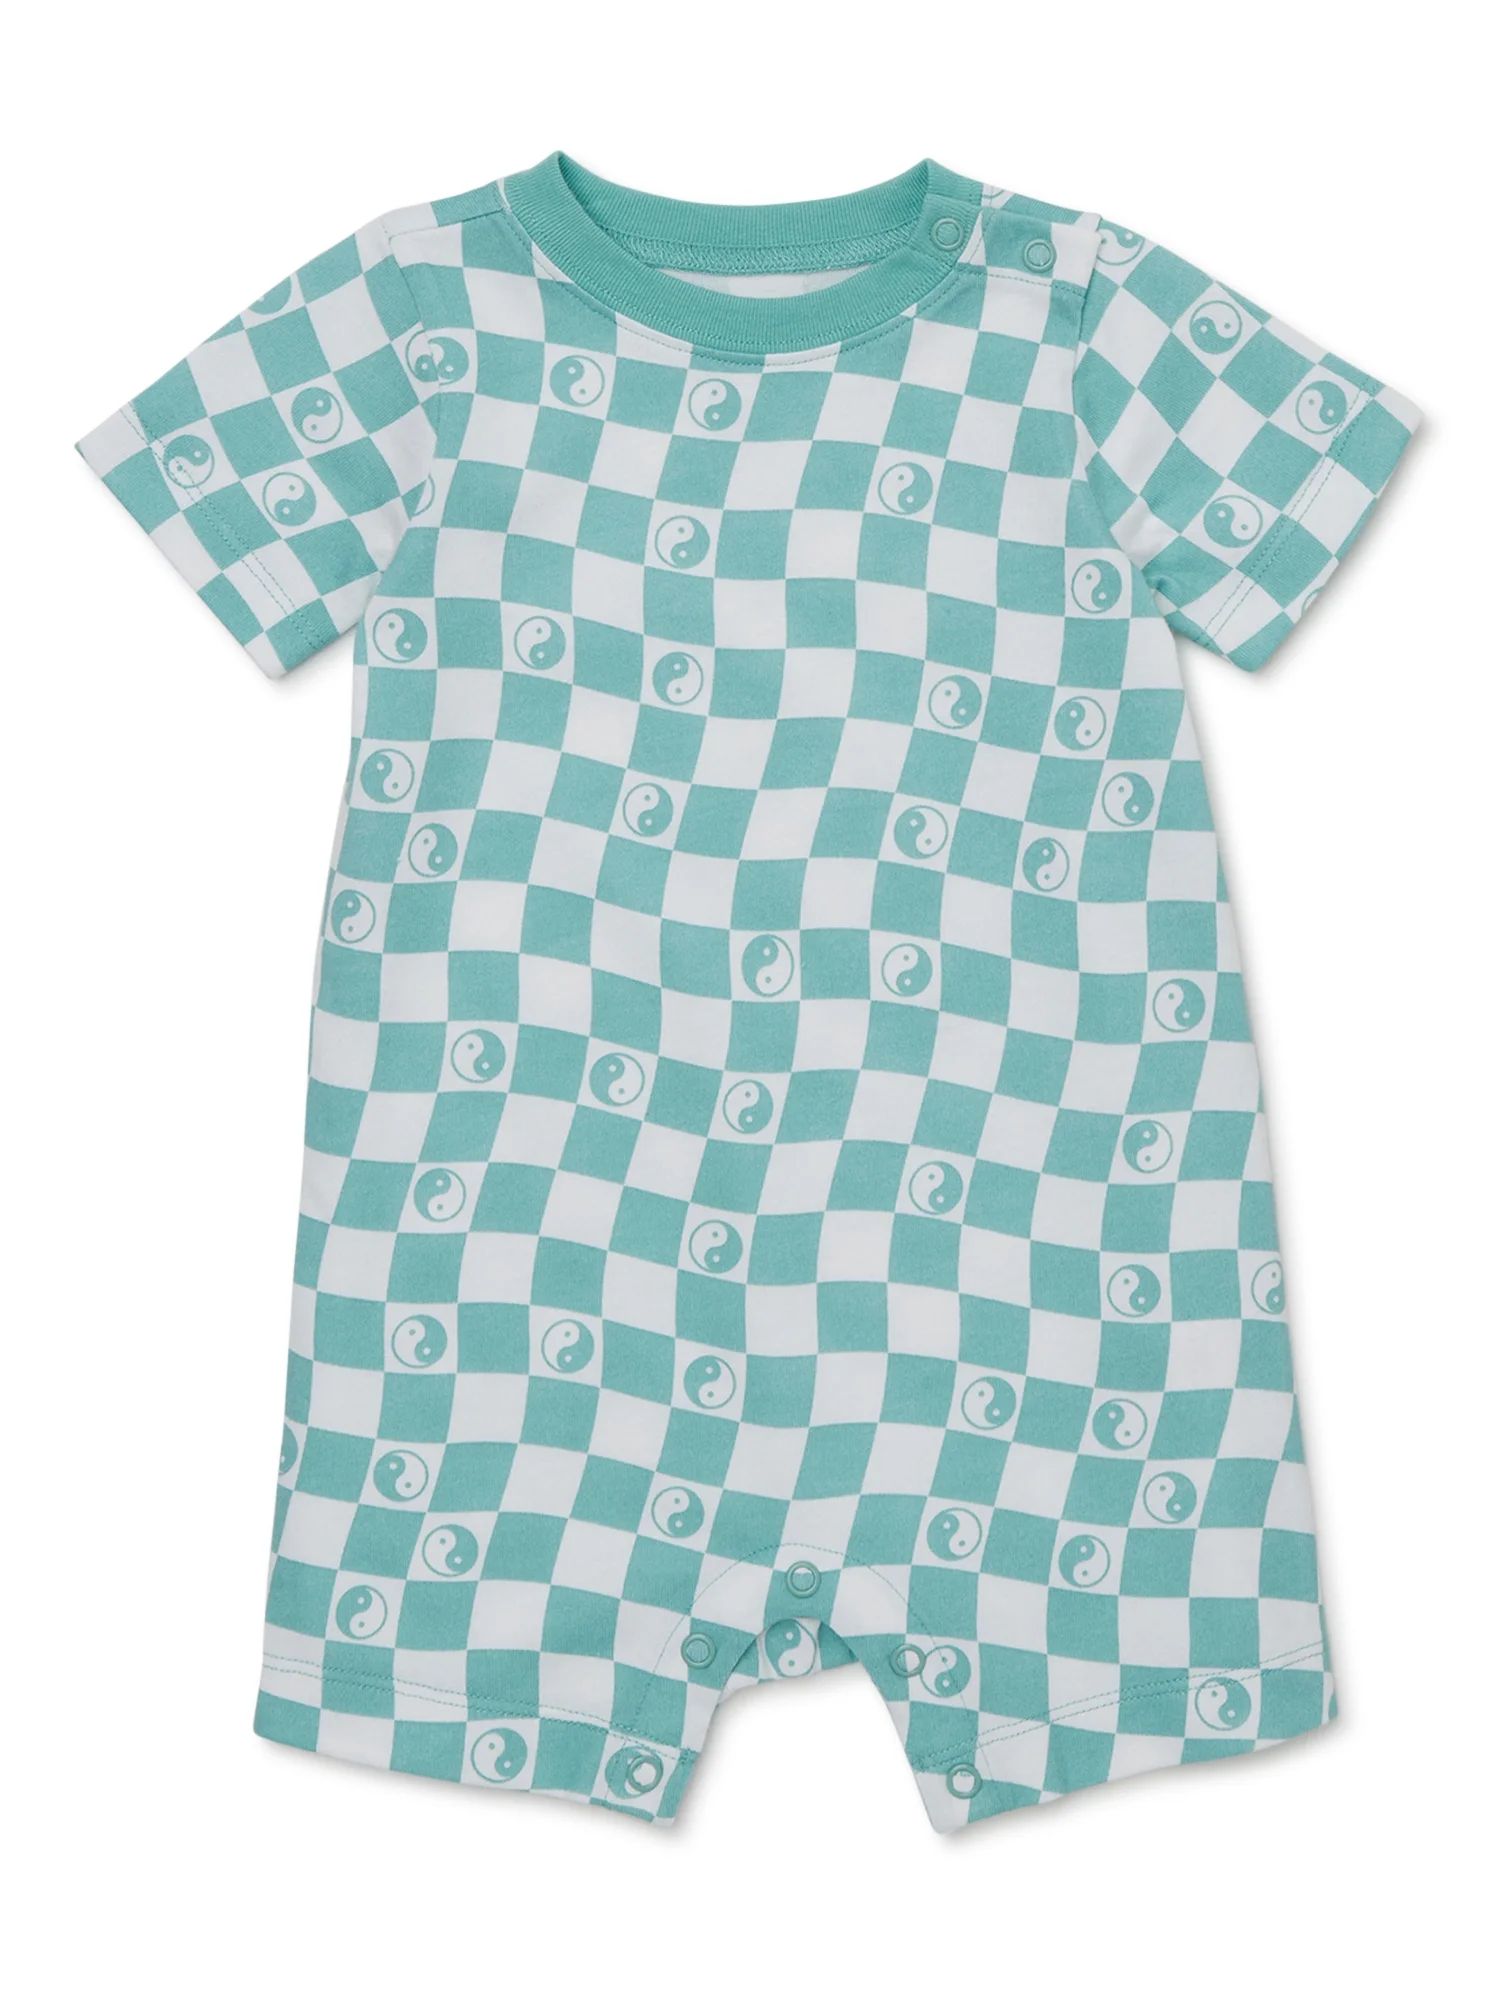 Garanimals Baby Boy Short Sleeve Print Romper, Sizes 0-24 Months | Walmart (US)